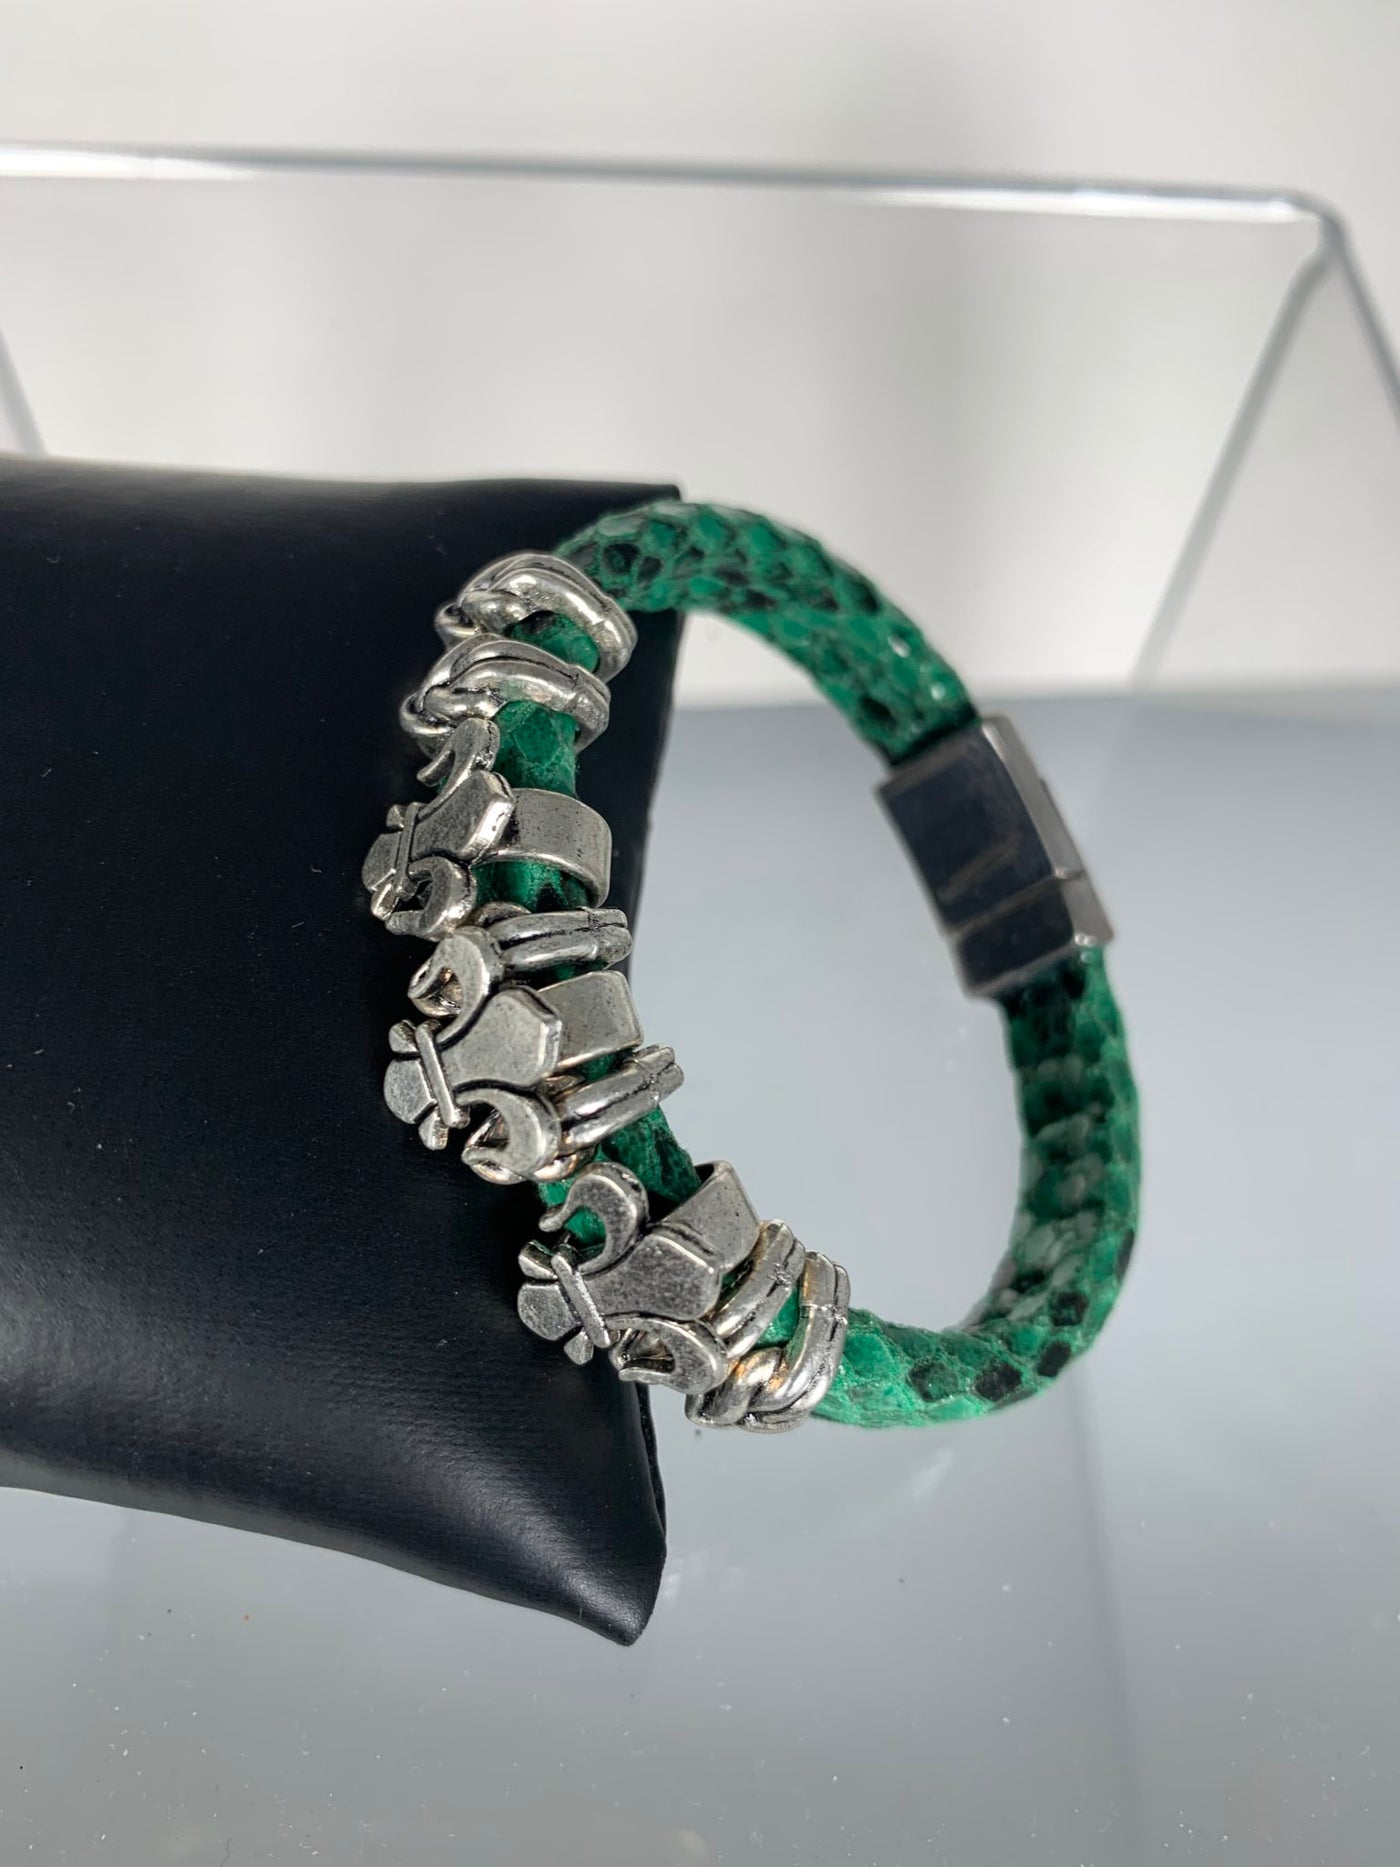 Green Snake Skin Band Bracelet Featuring Fleur De Lis Motifs